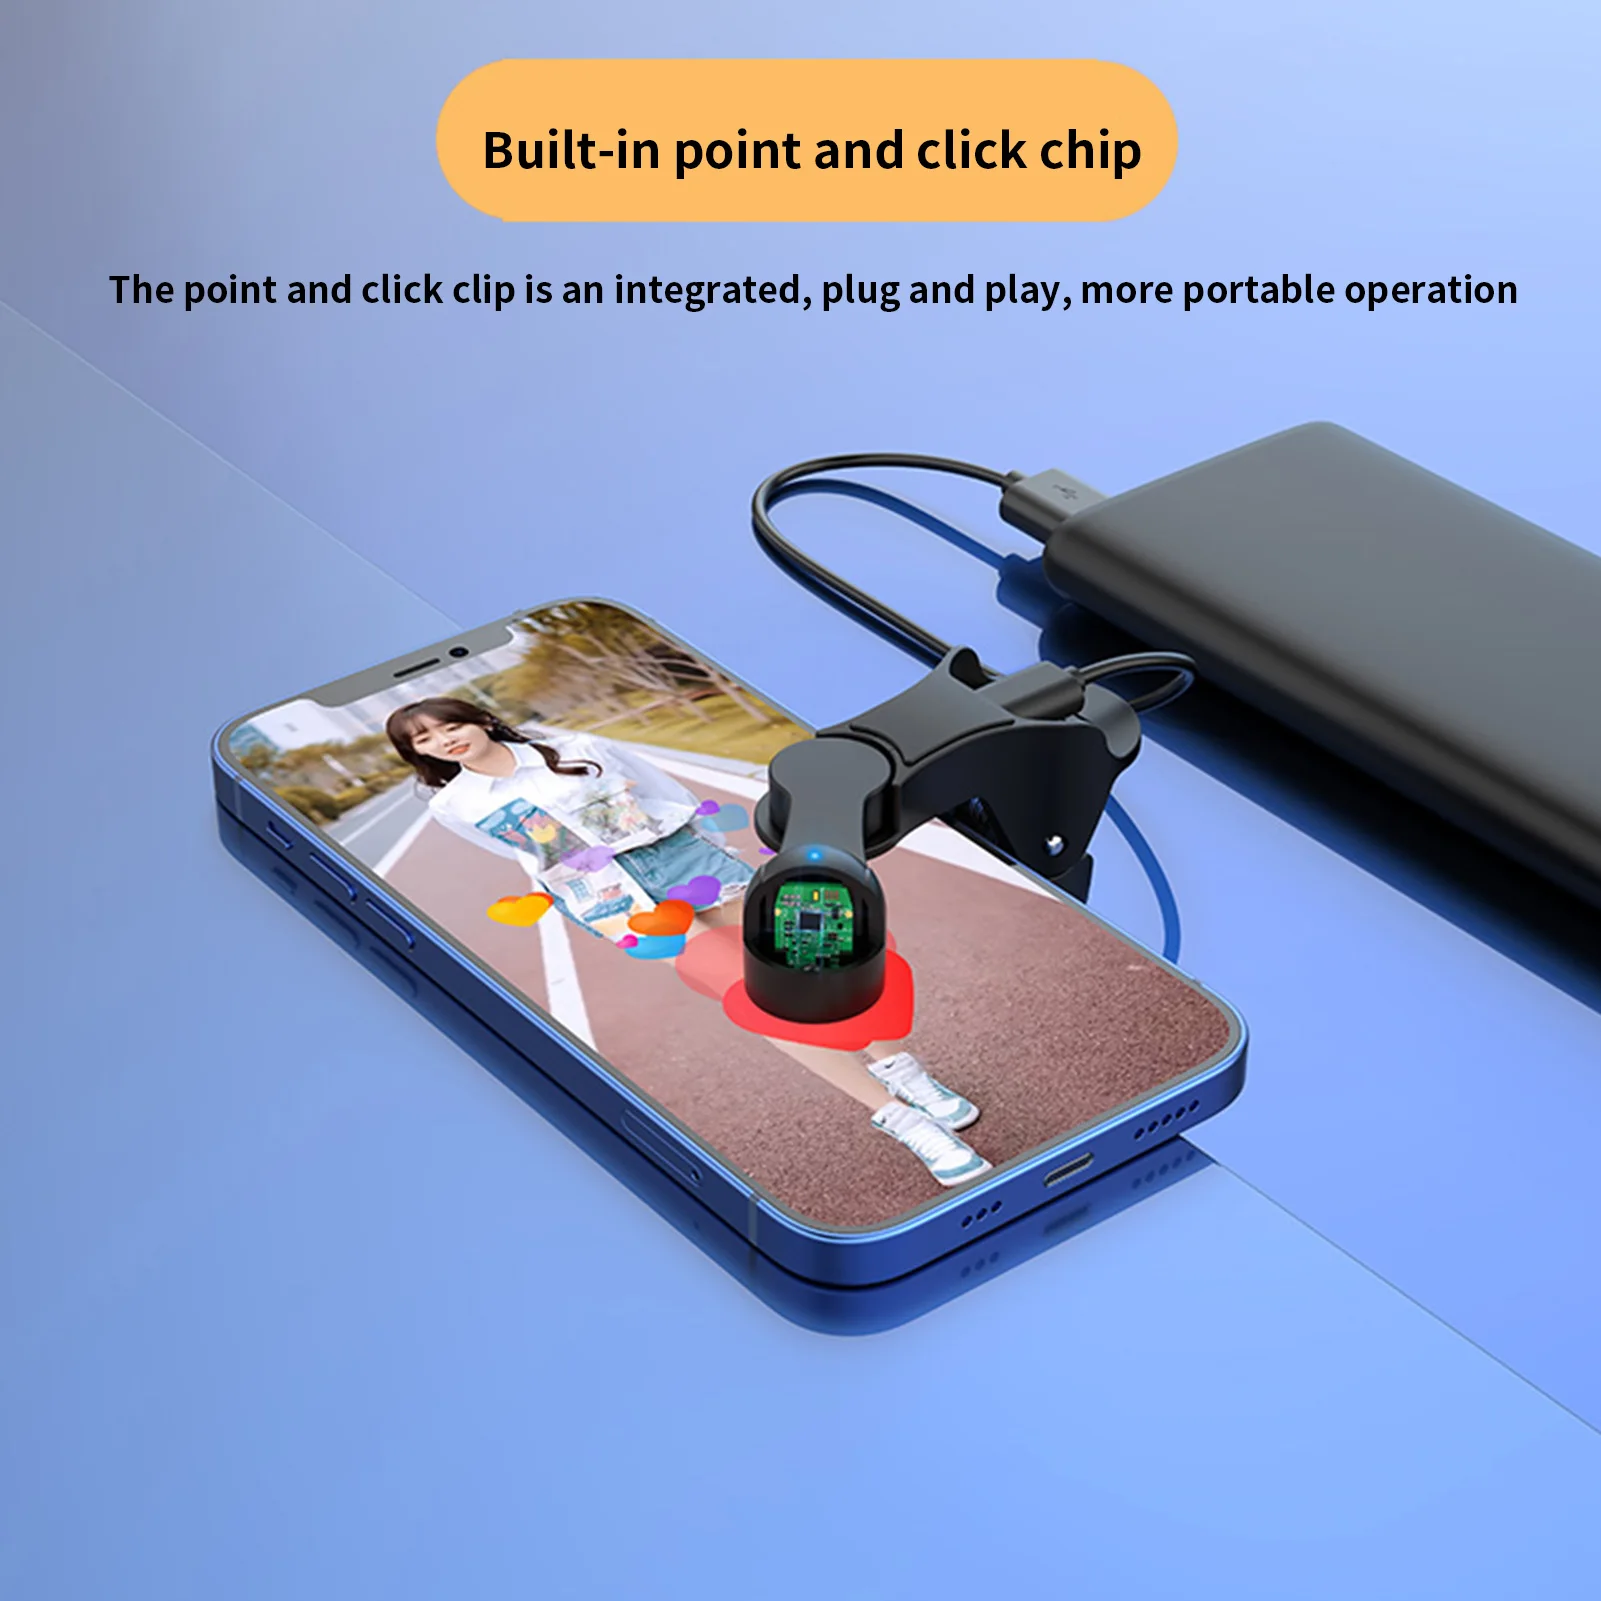 Auto Clicker עבור הטלפון אוטומטית מסך הטלפון Tapper מתכוונן אוטומטי את מכשיר הטלפון במסך Tapper מדומה האצבע לחיצה - 1